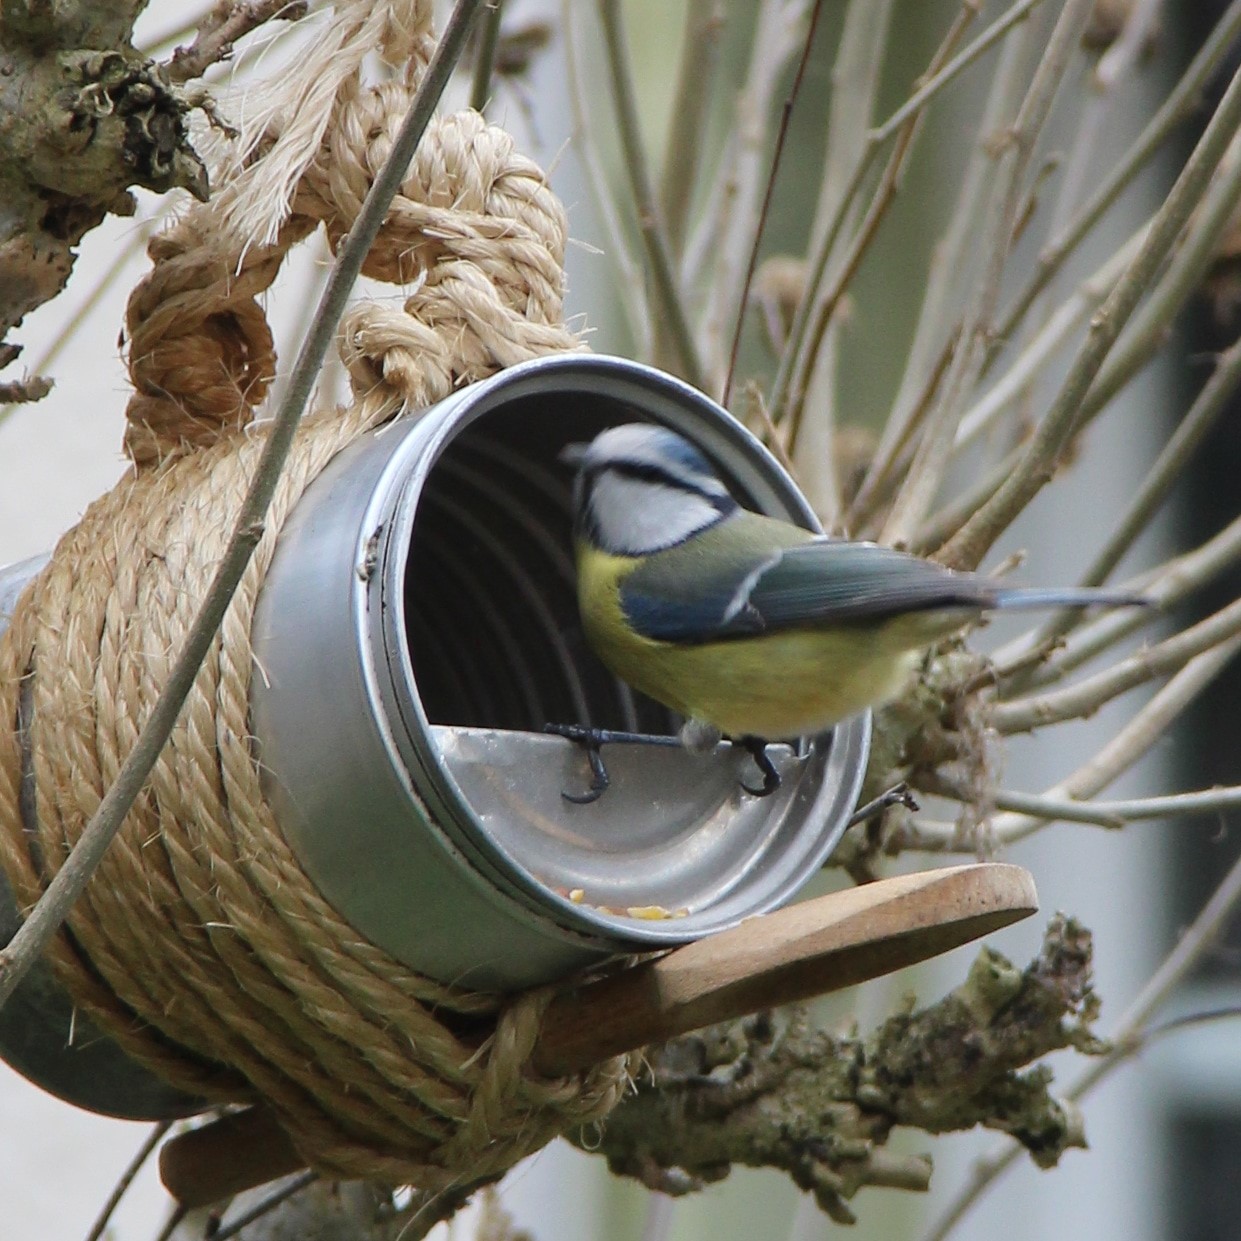 Créer une mangeoire pour oiseaux avec une bouteille en plastique